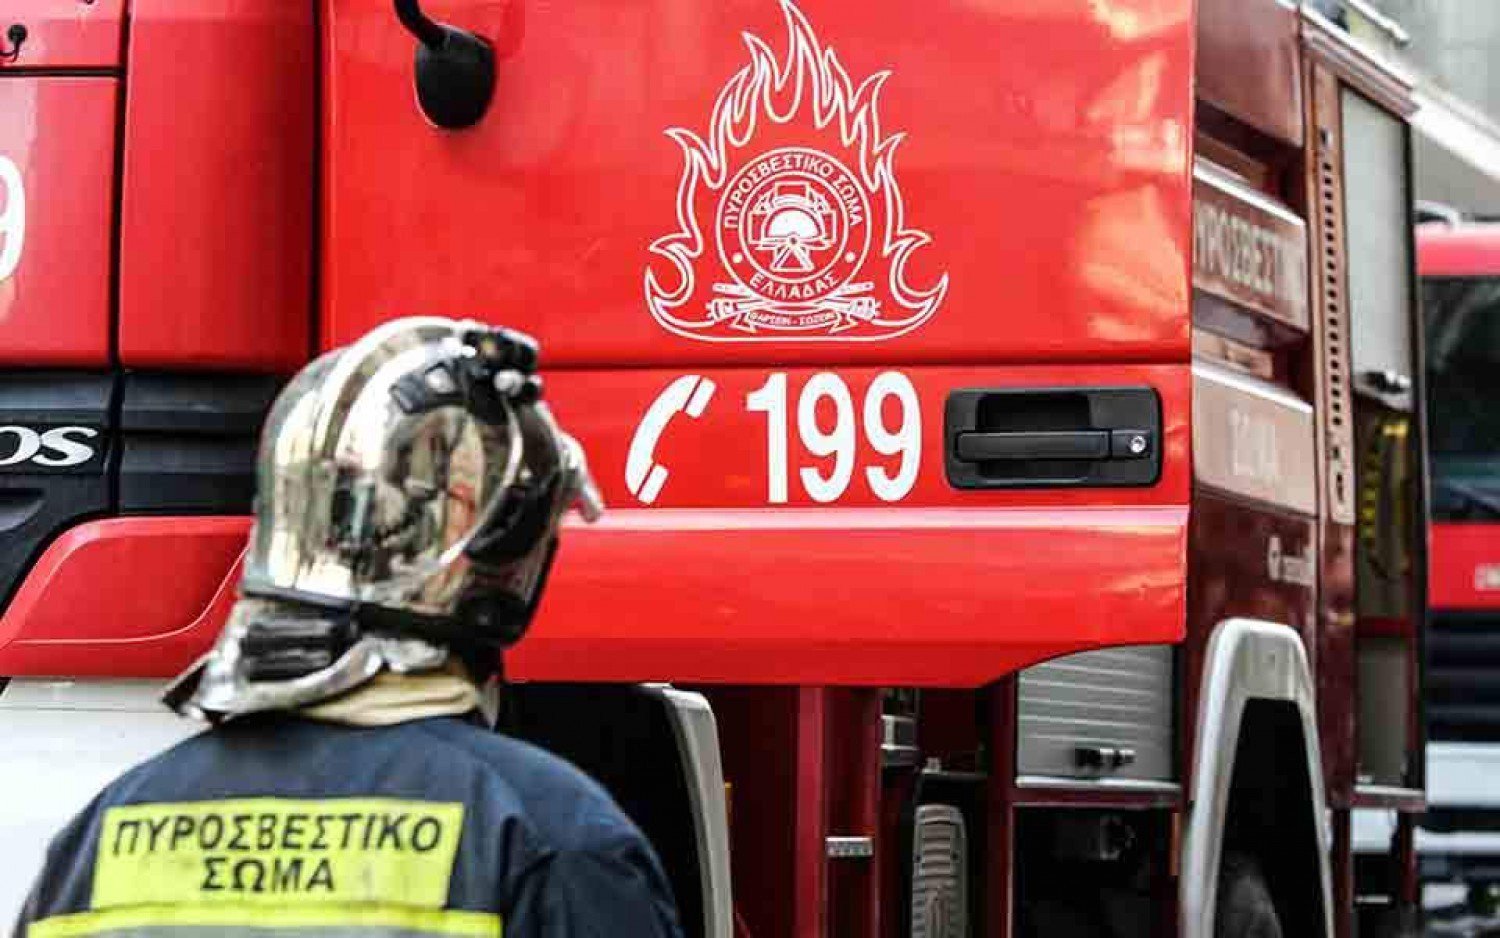 Θεσσαλονίκη: Κάηκαν ολοσχερώς δύο σταθμευμένα αυτοκίνητα (φώτο)